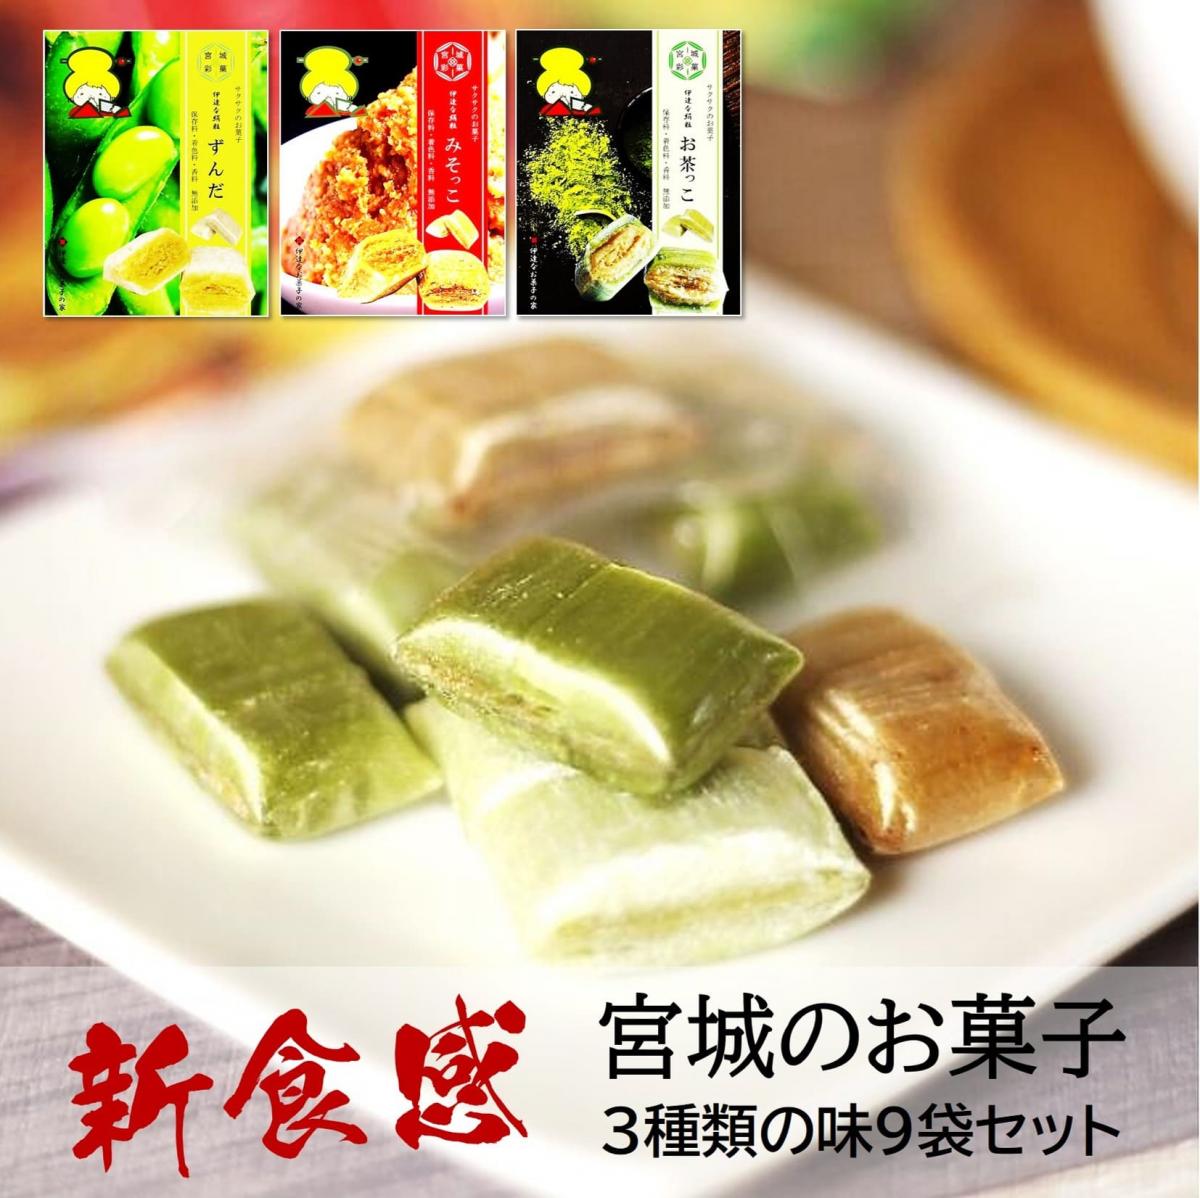 【新食感のお菓子】宮城の味くらべ/3種類9袋セット